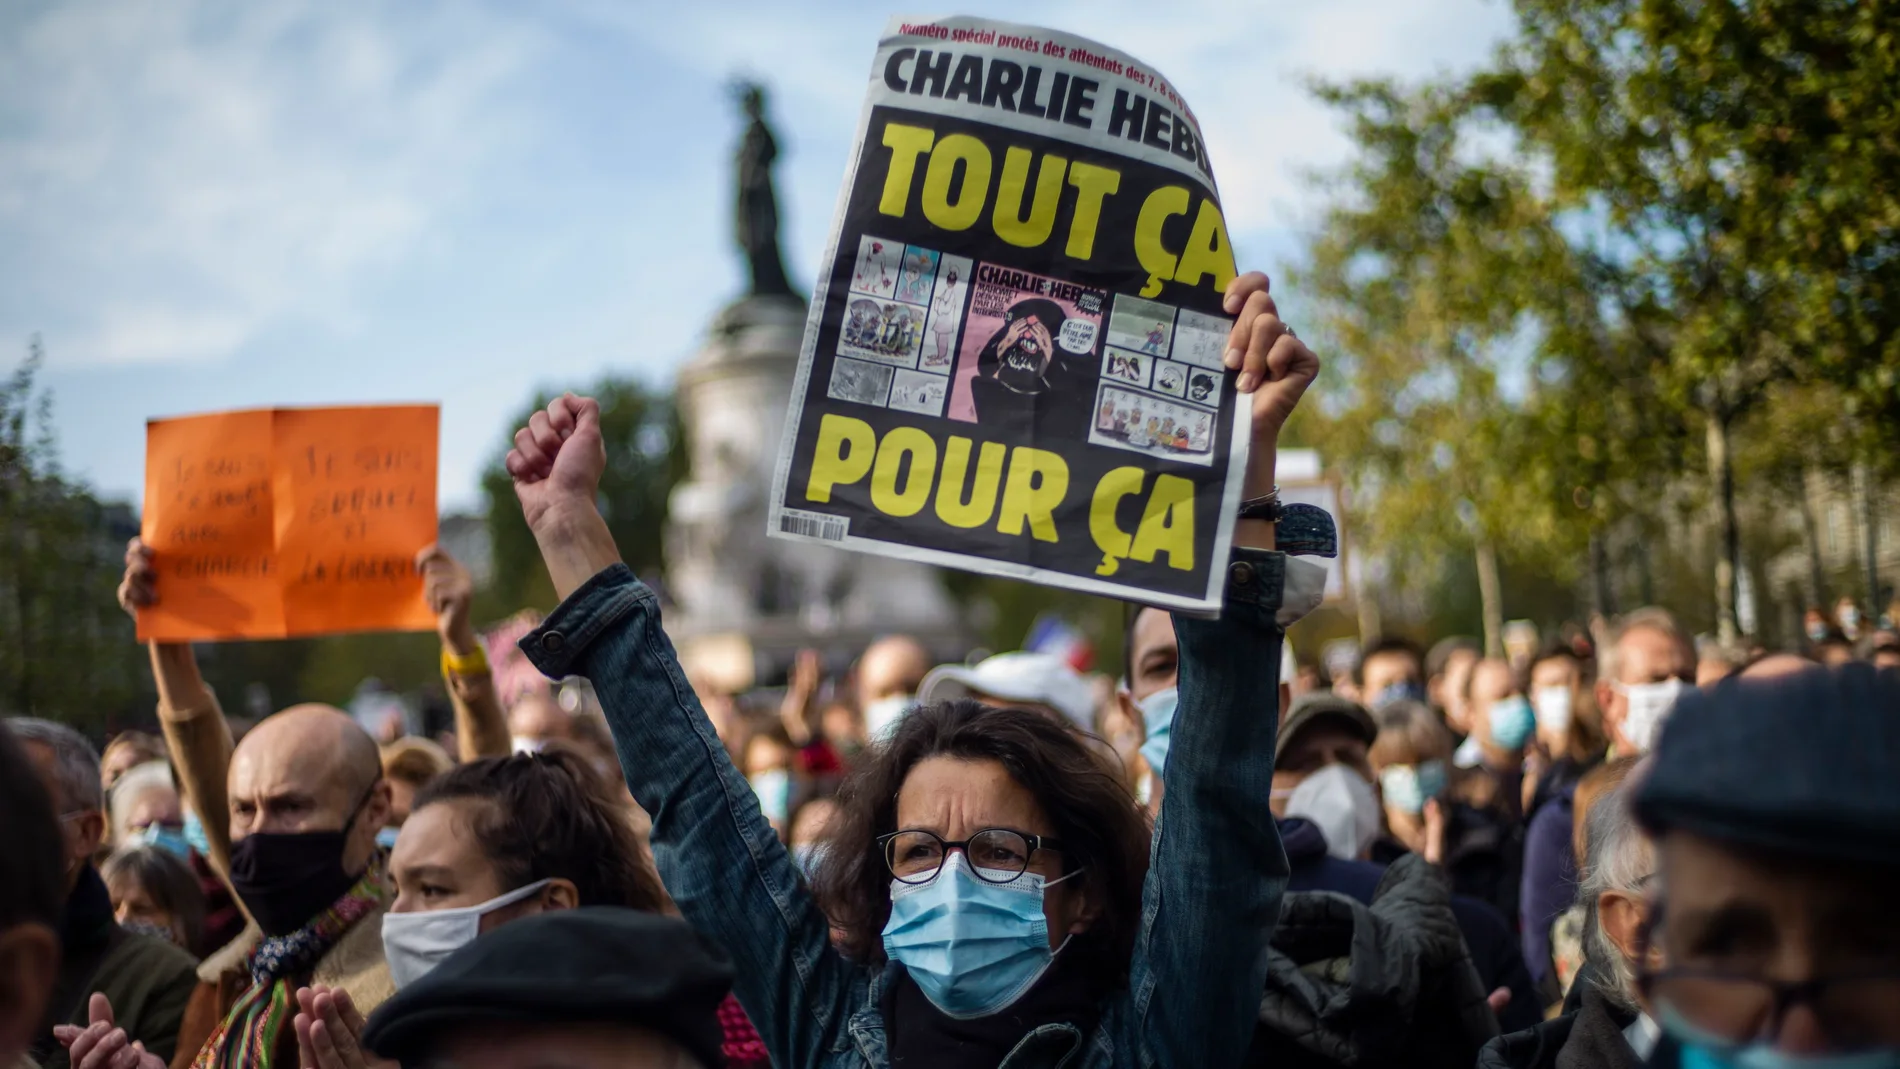 La imagen, que data de octubre de 2020, muestra una manifestación en París, Francia, por el ataque a Samuel Paty, que fue decapitado por un joven tras enseñar una camiseta de Charlie Hebdo. EFE